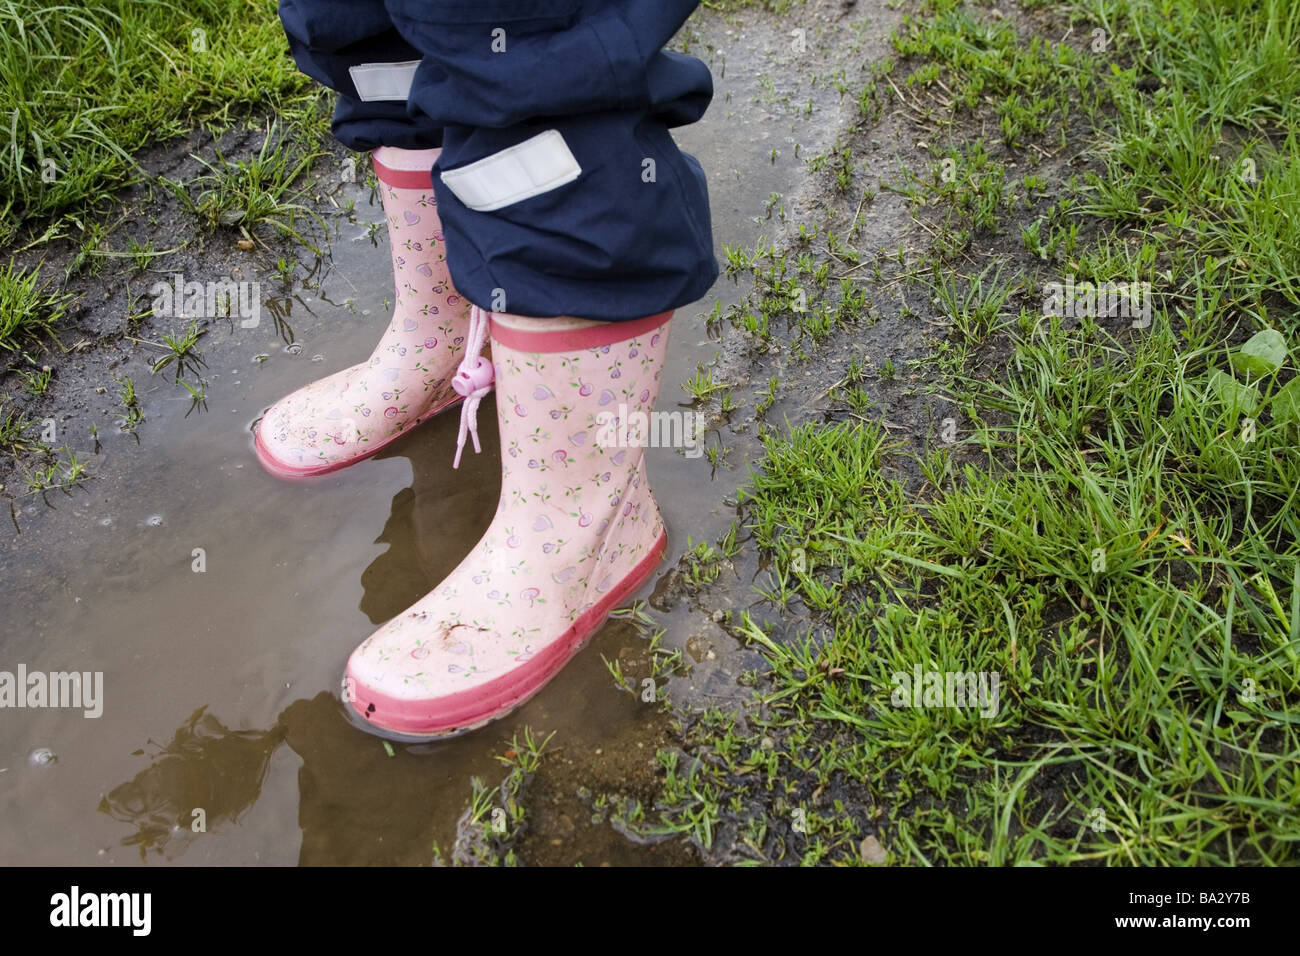 Via ragazze dettaglio gambe stivali di gomma pozza di serie viene lungo la  gente bambino antipioggia rain-Calzature scarpe e stivali fiore  rosa-pattern Foto stock - Alamy